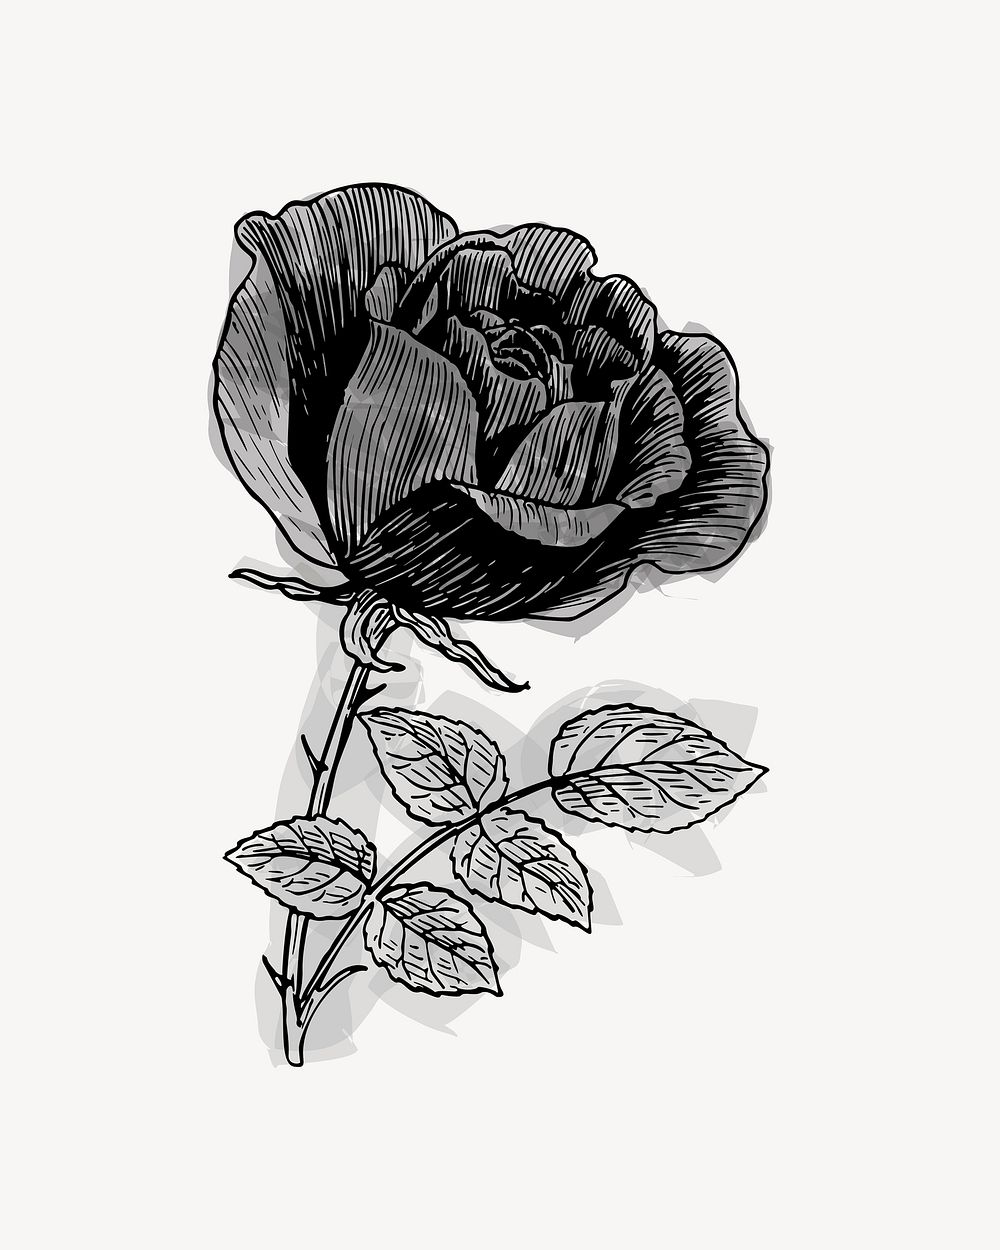 Vintage rose clipart vector. Free public domain CC0 image.